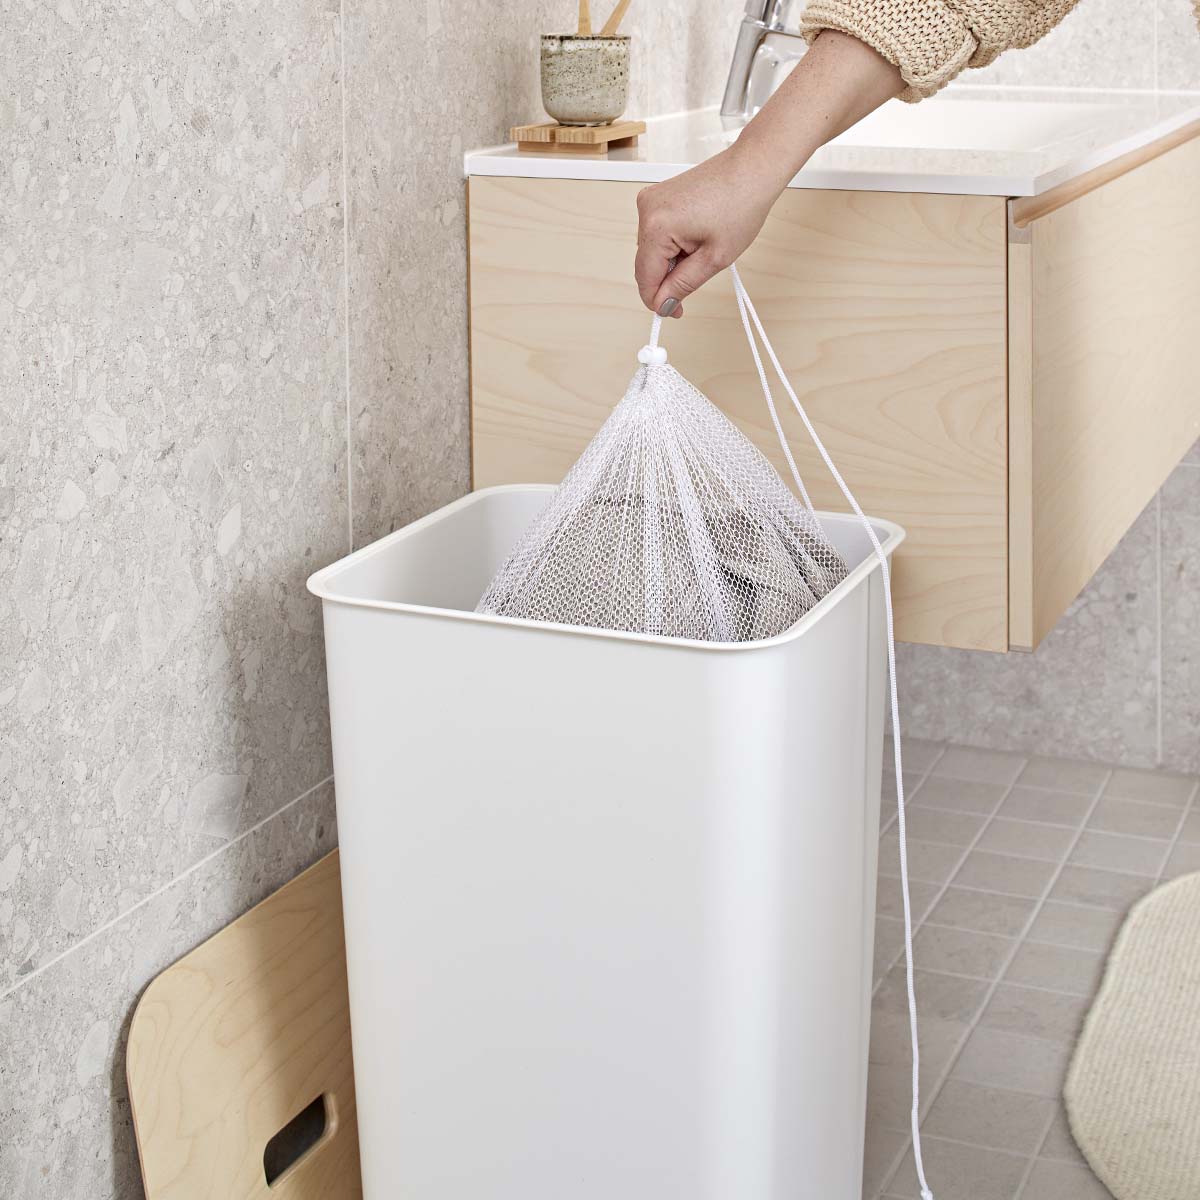 Sac à linge sale  Filet de lavage : sacs à linge sale et filets de lavage  professionnel